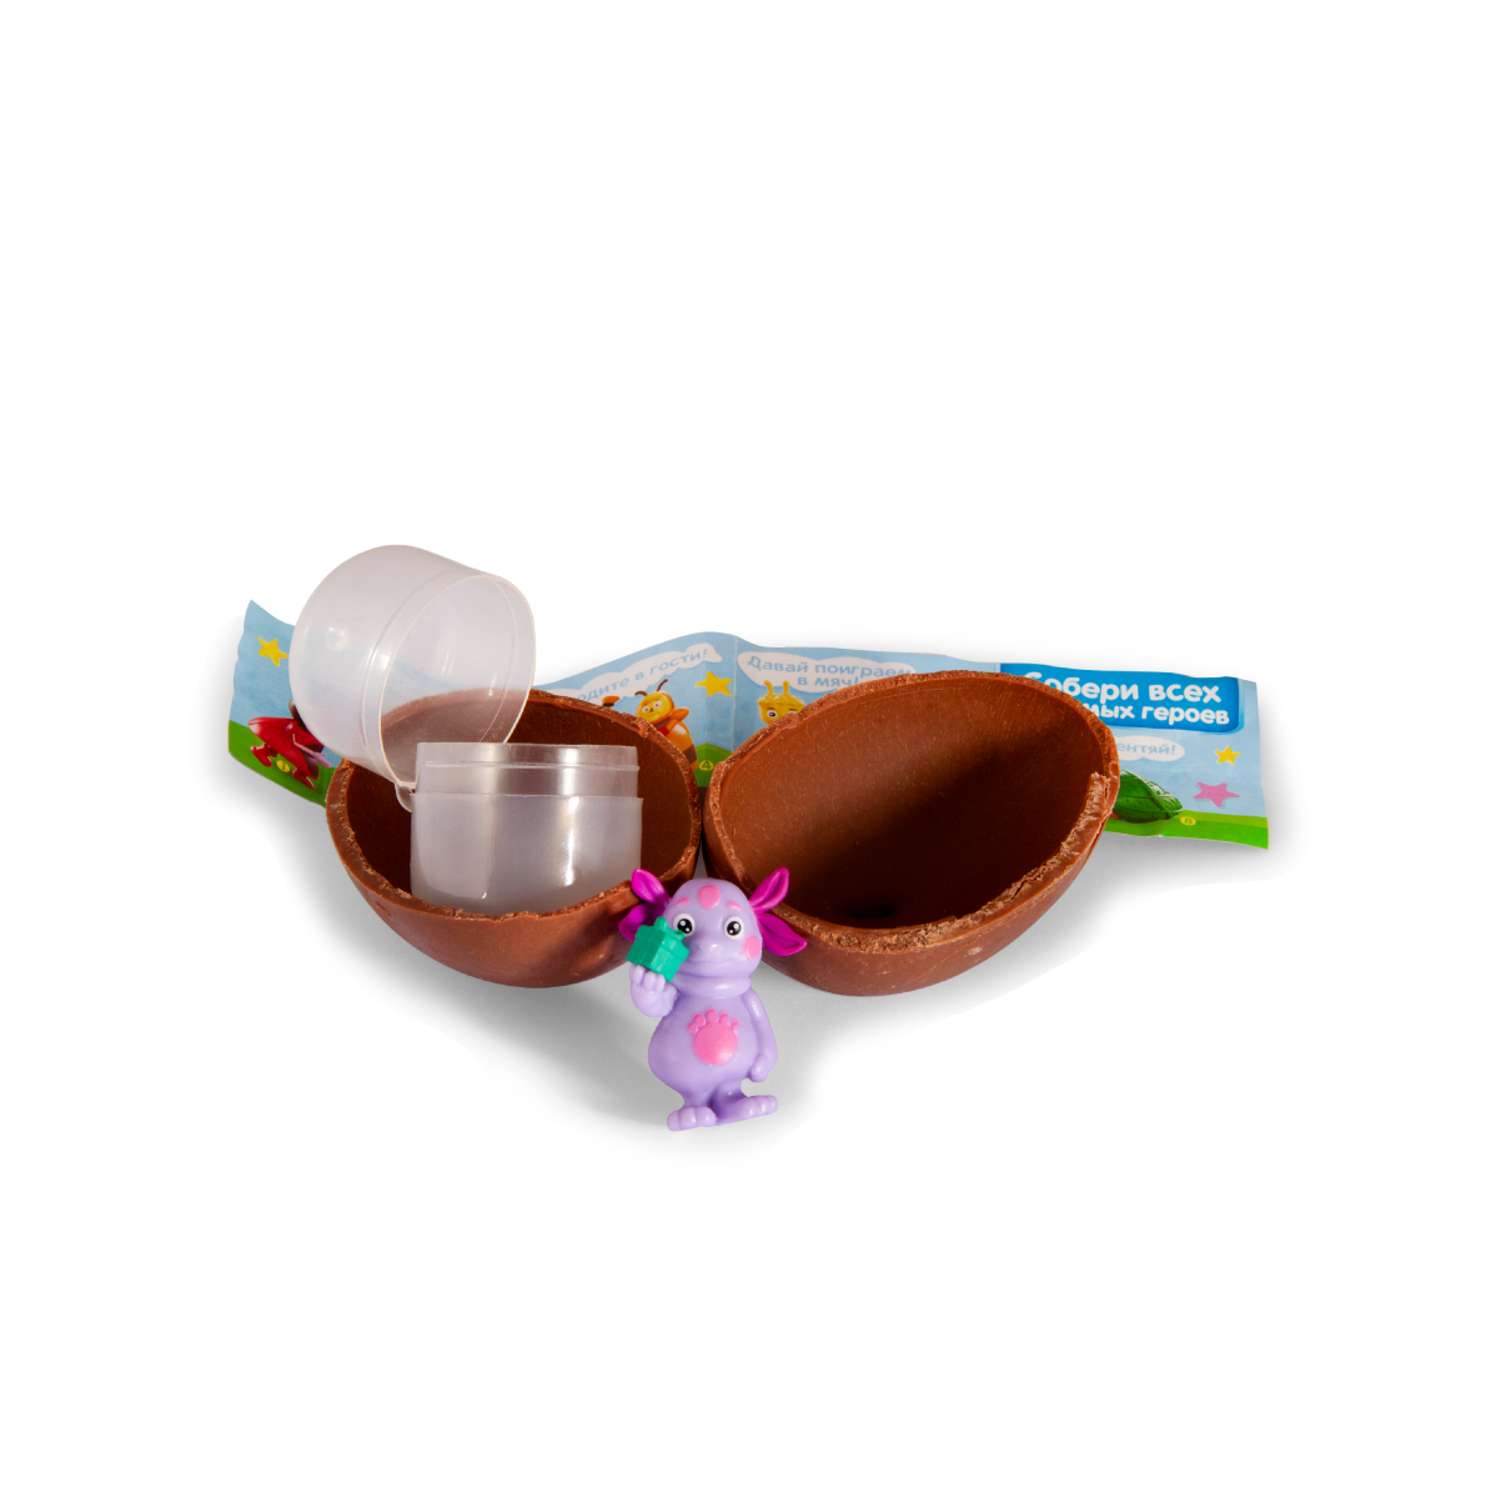 Шоколадное яйцо с игрушкой Сладкая сказка MEGA SECRET ЛУНТИК 3шт х 20г - фото 7